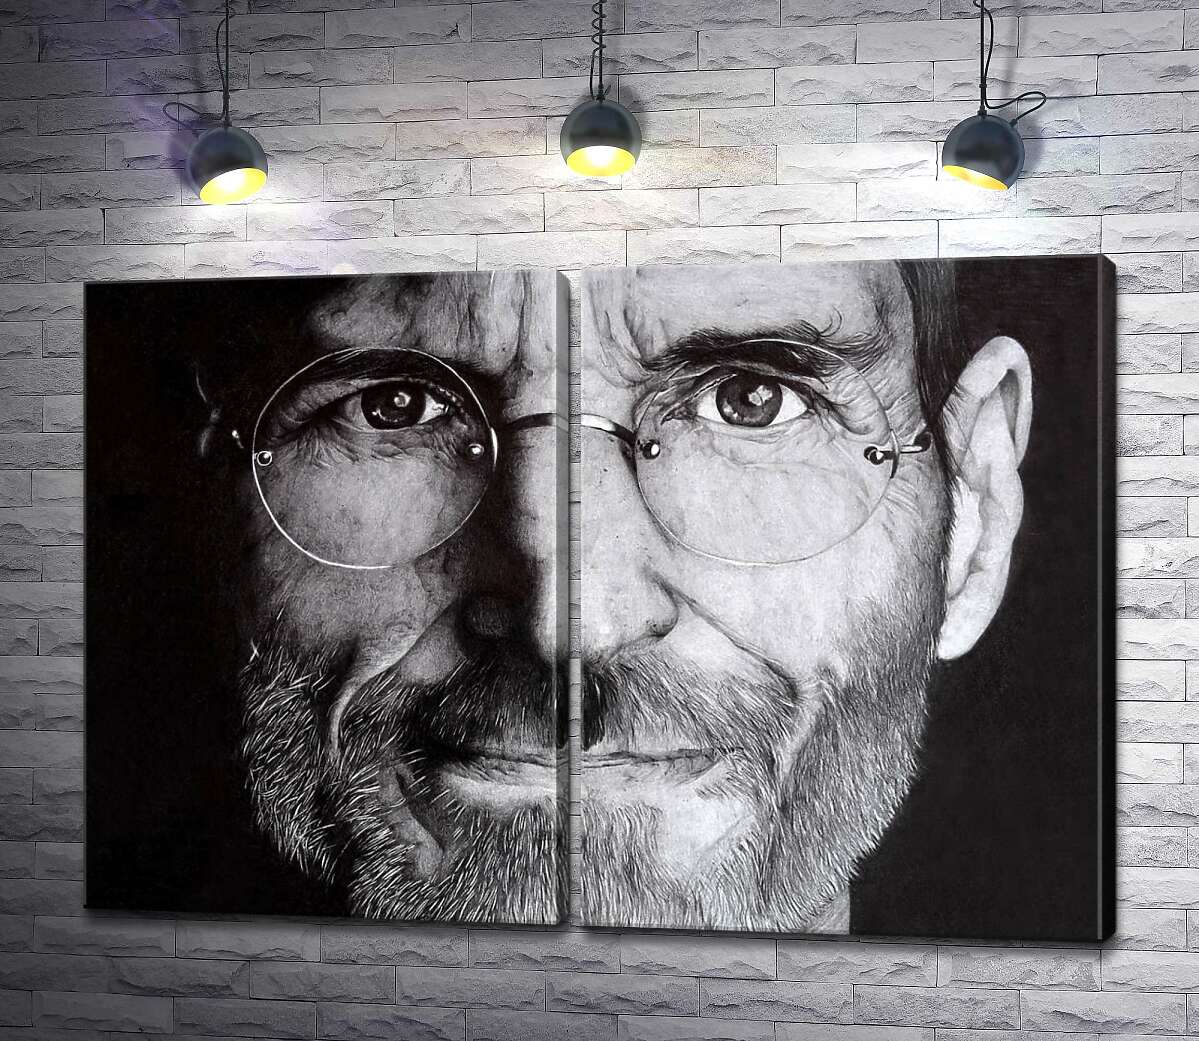 модульная картина Лицо предпринимателя Стива Джобса (Steve Jobs)